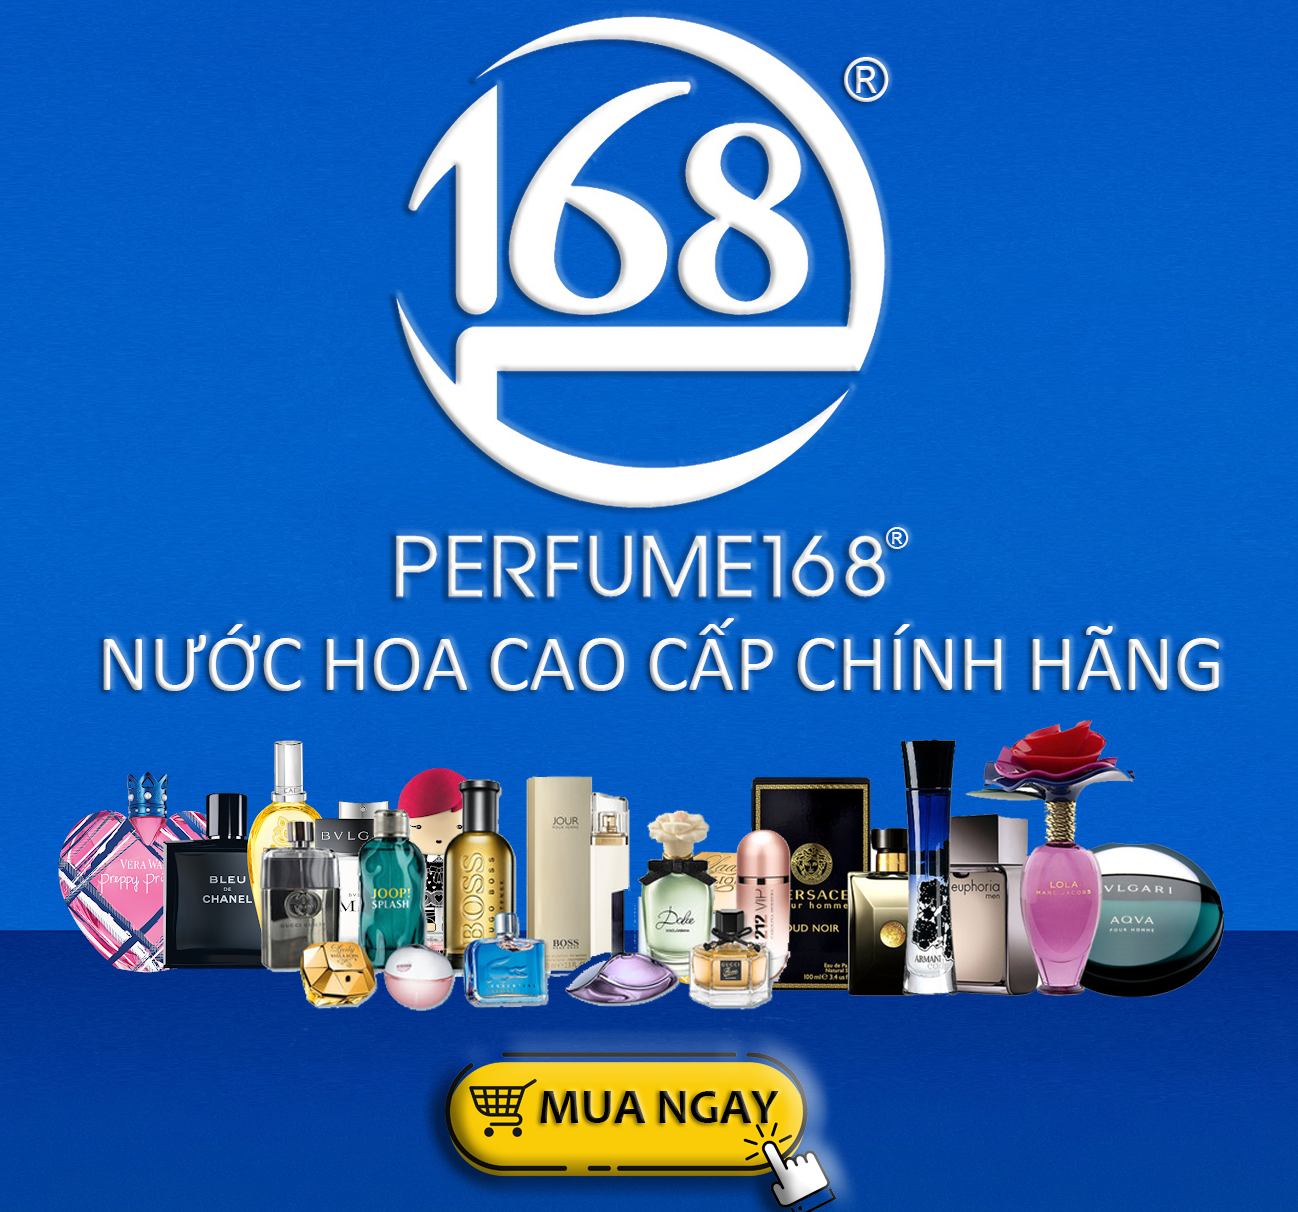 Cửa hàng nước hoa Perfume168